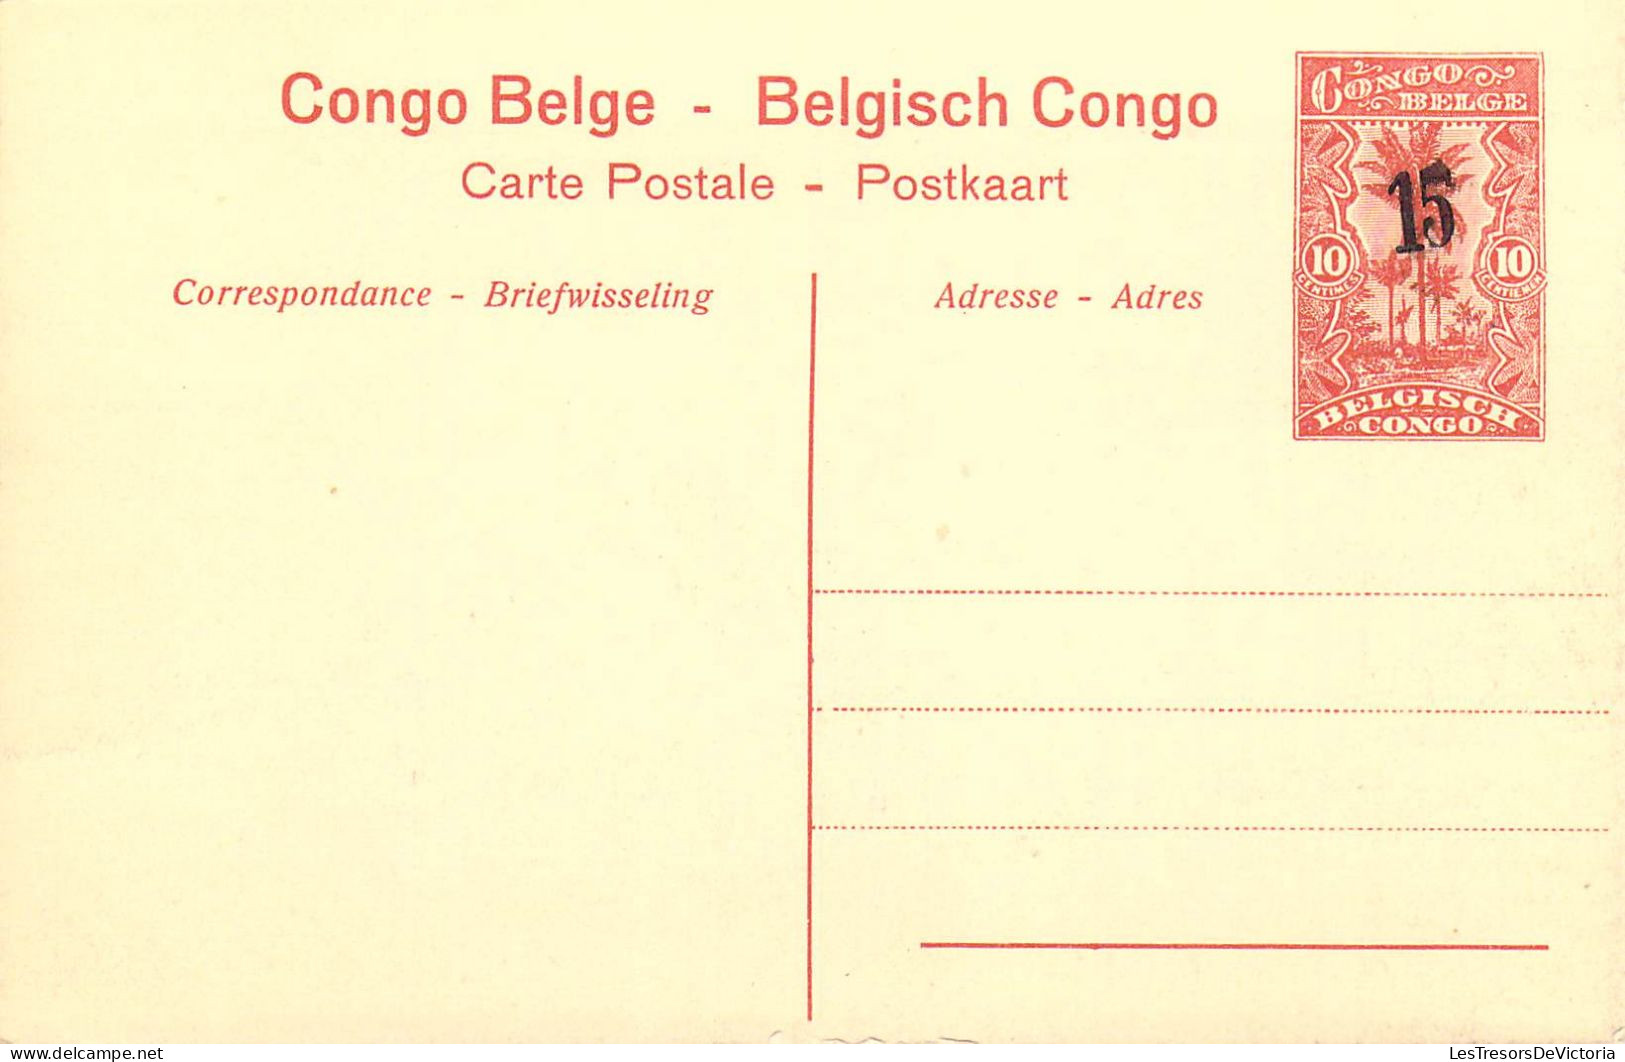 CONGO BELGE - Chutes De La Lubilash Près De Tshala - Carte Postale Ancienne - Belgisch-Kongo